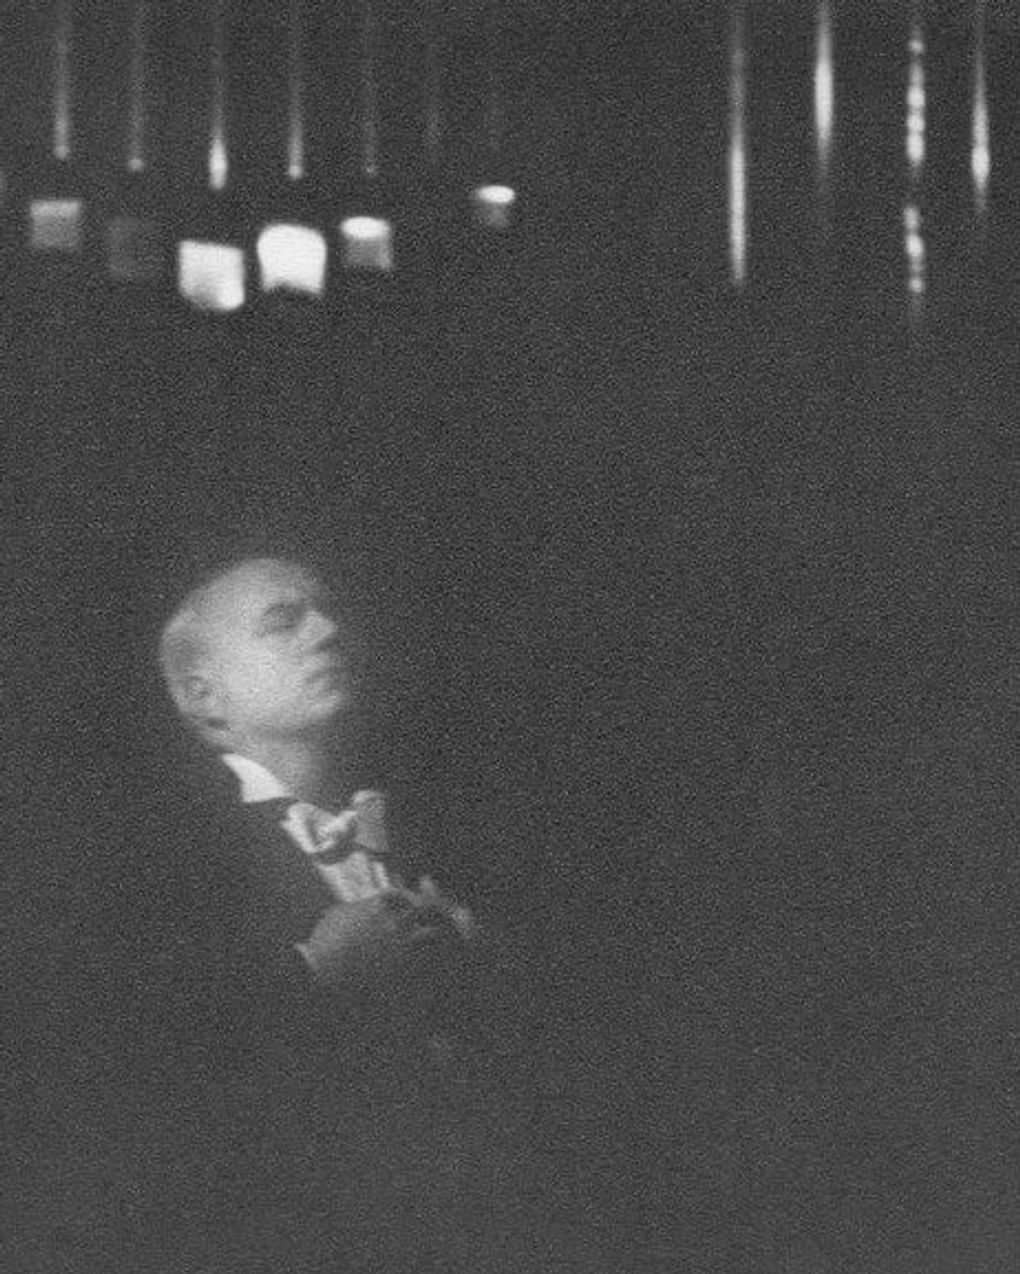 Иван Козловский. Фотография: Борис Таиров / Мультимедиа арт музей, Москва